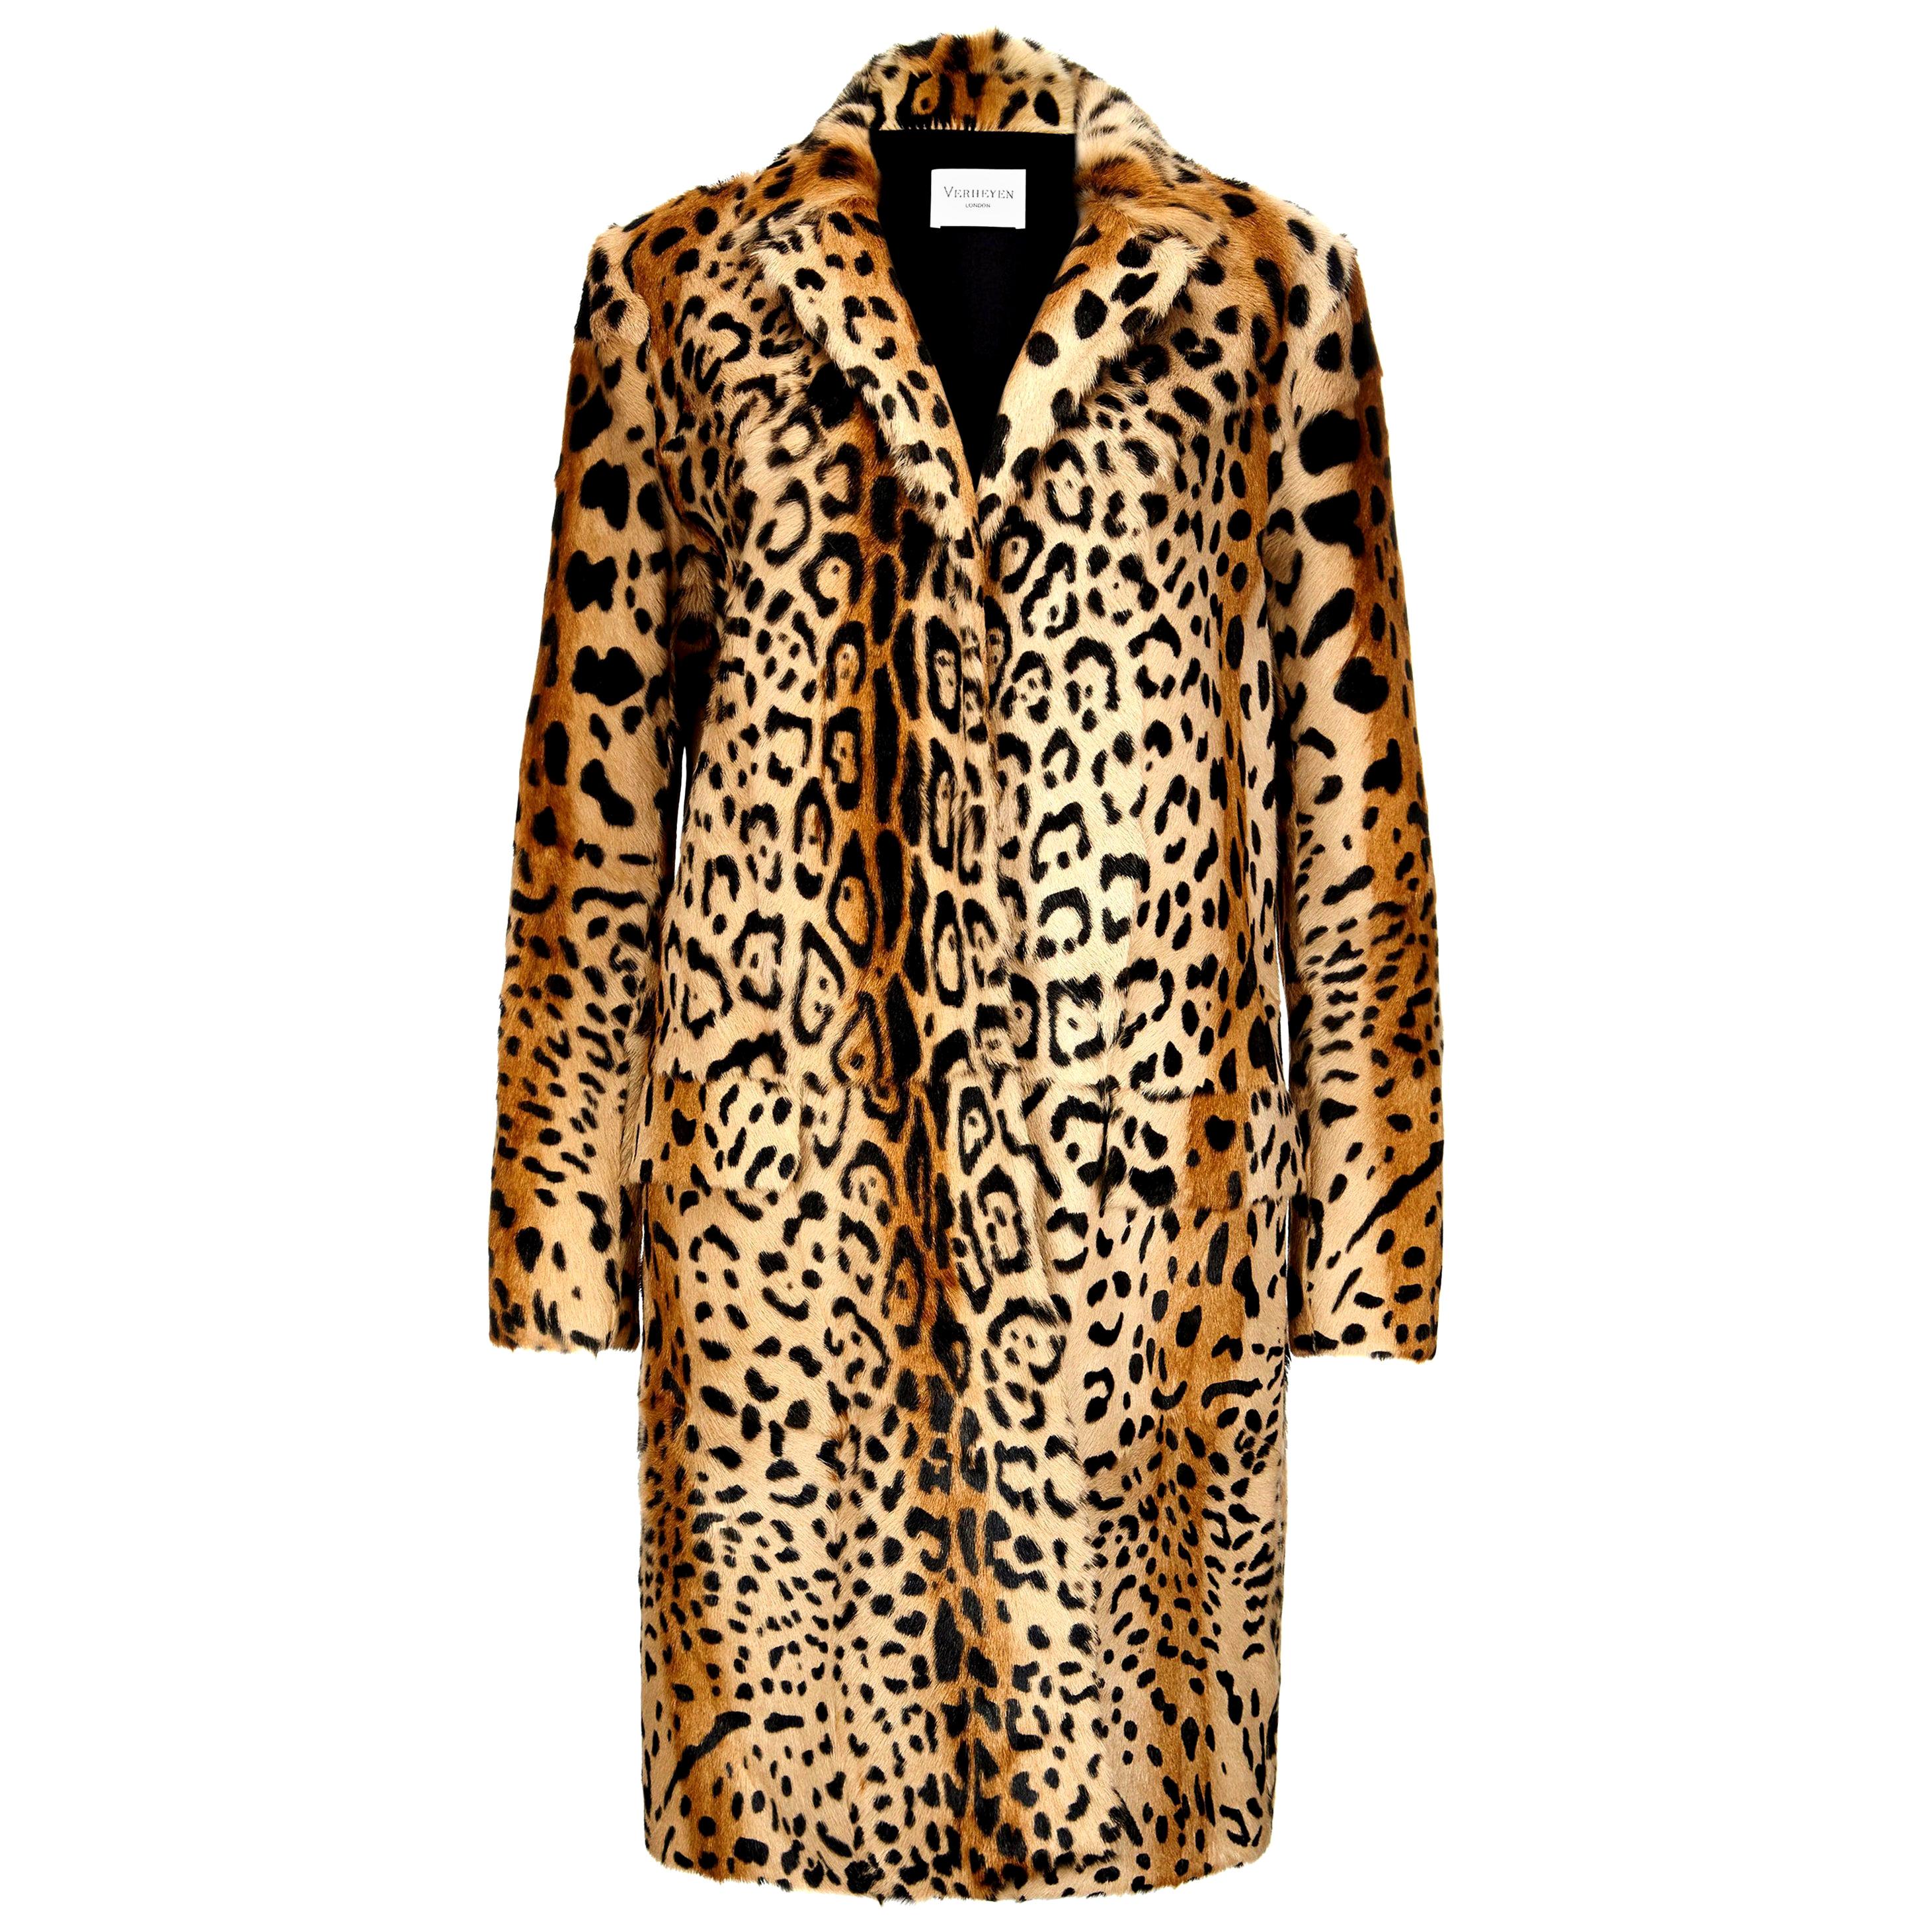 Verheyen London Leopard Print Coat in Natural Goat Hair Fur UK 6 